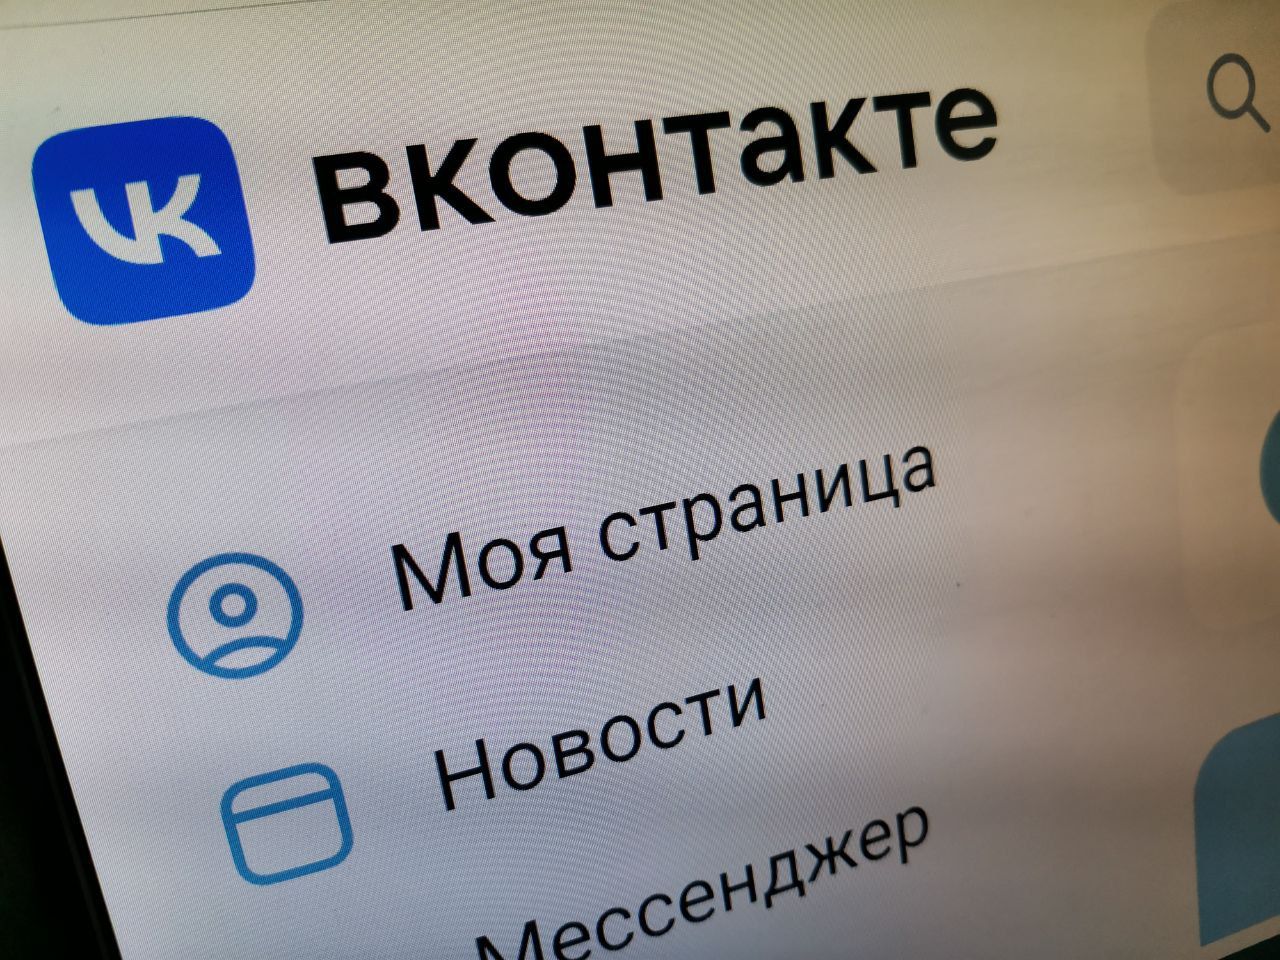 Серовчанка одолжила 21 тысячу рублей «другу из соцсети». Страница друга оказалась взломанной